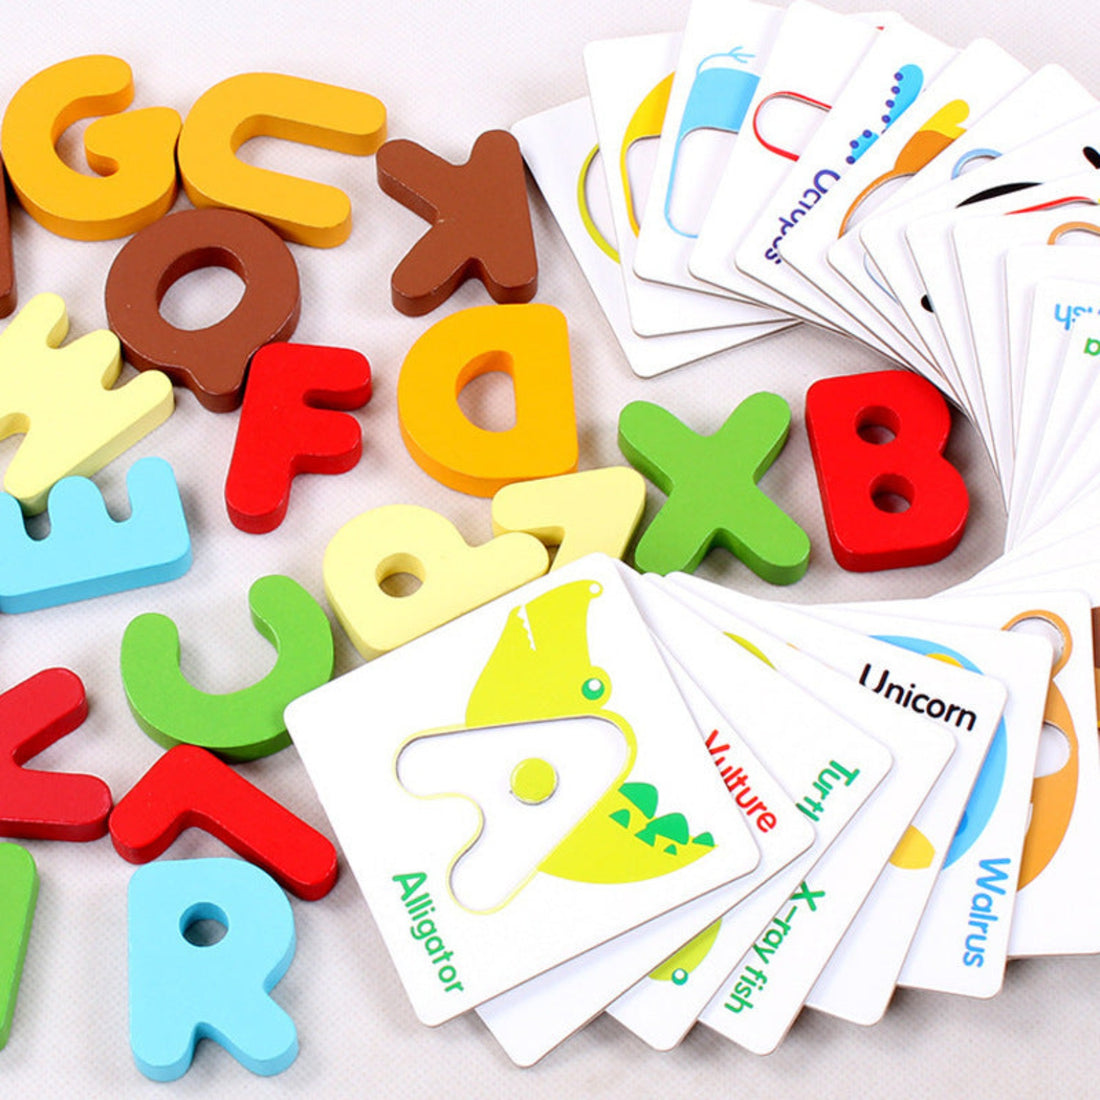 Cognitive development puzzle toys for babies